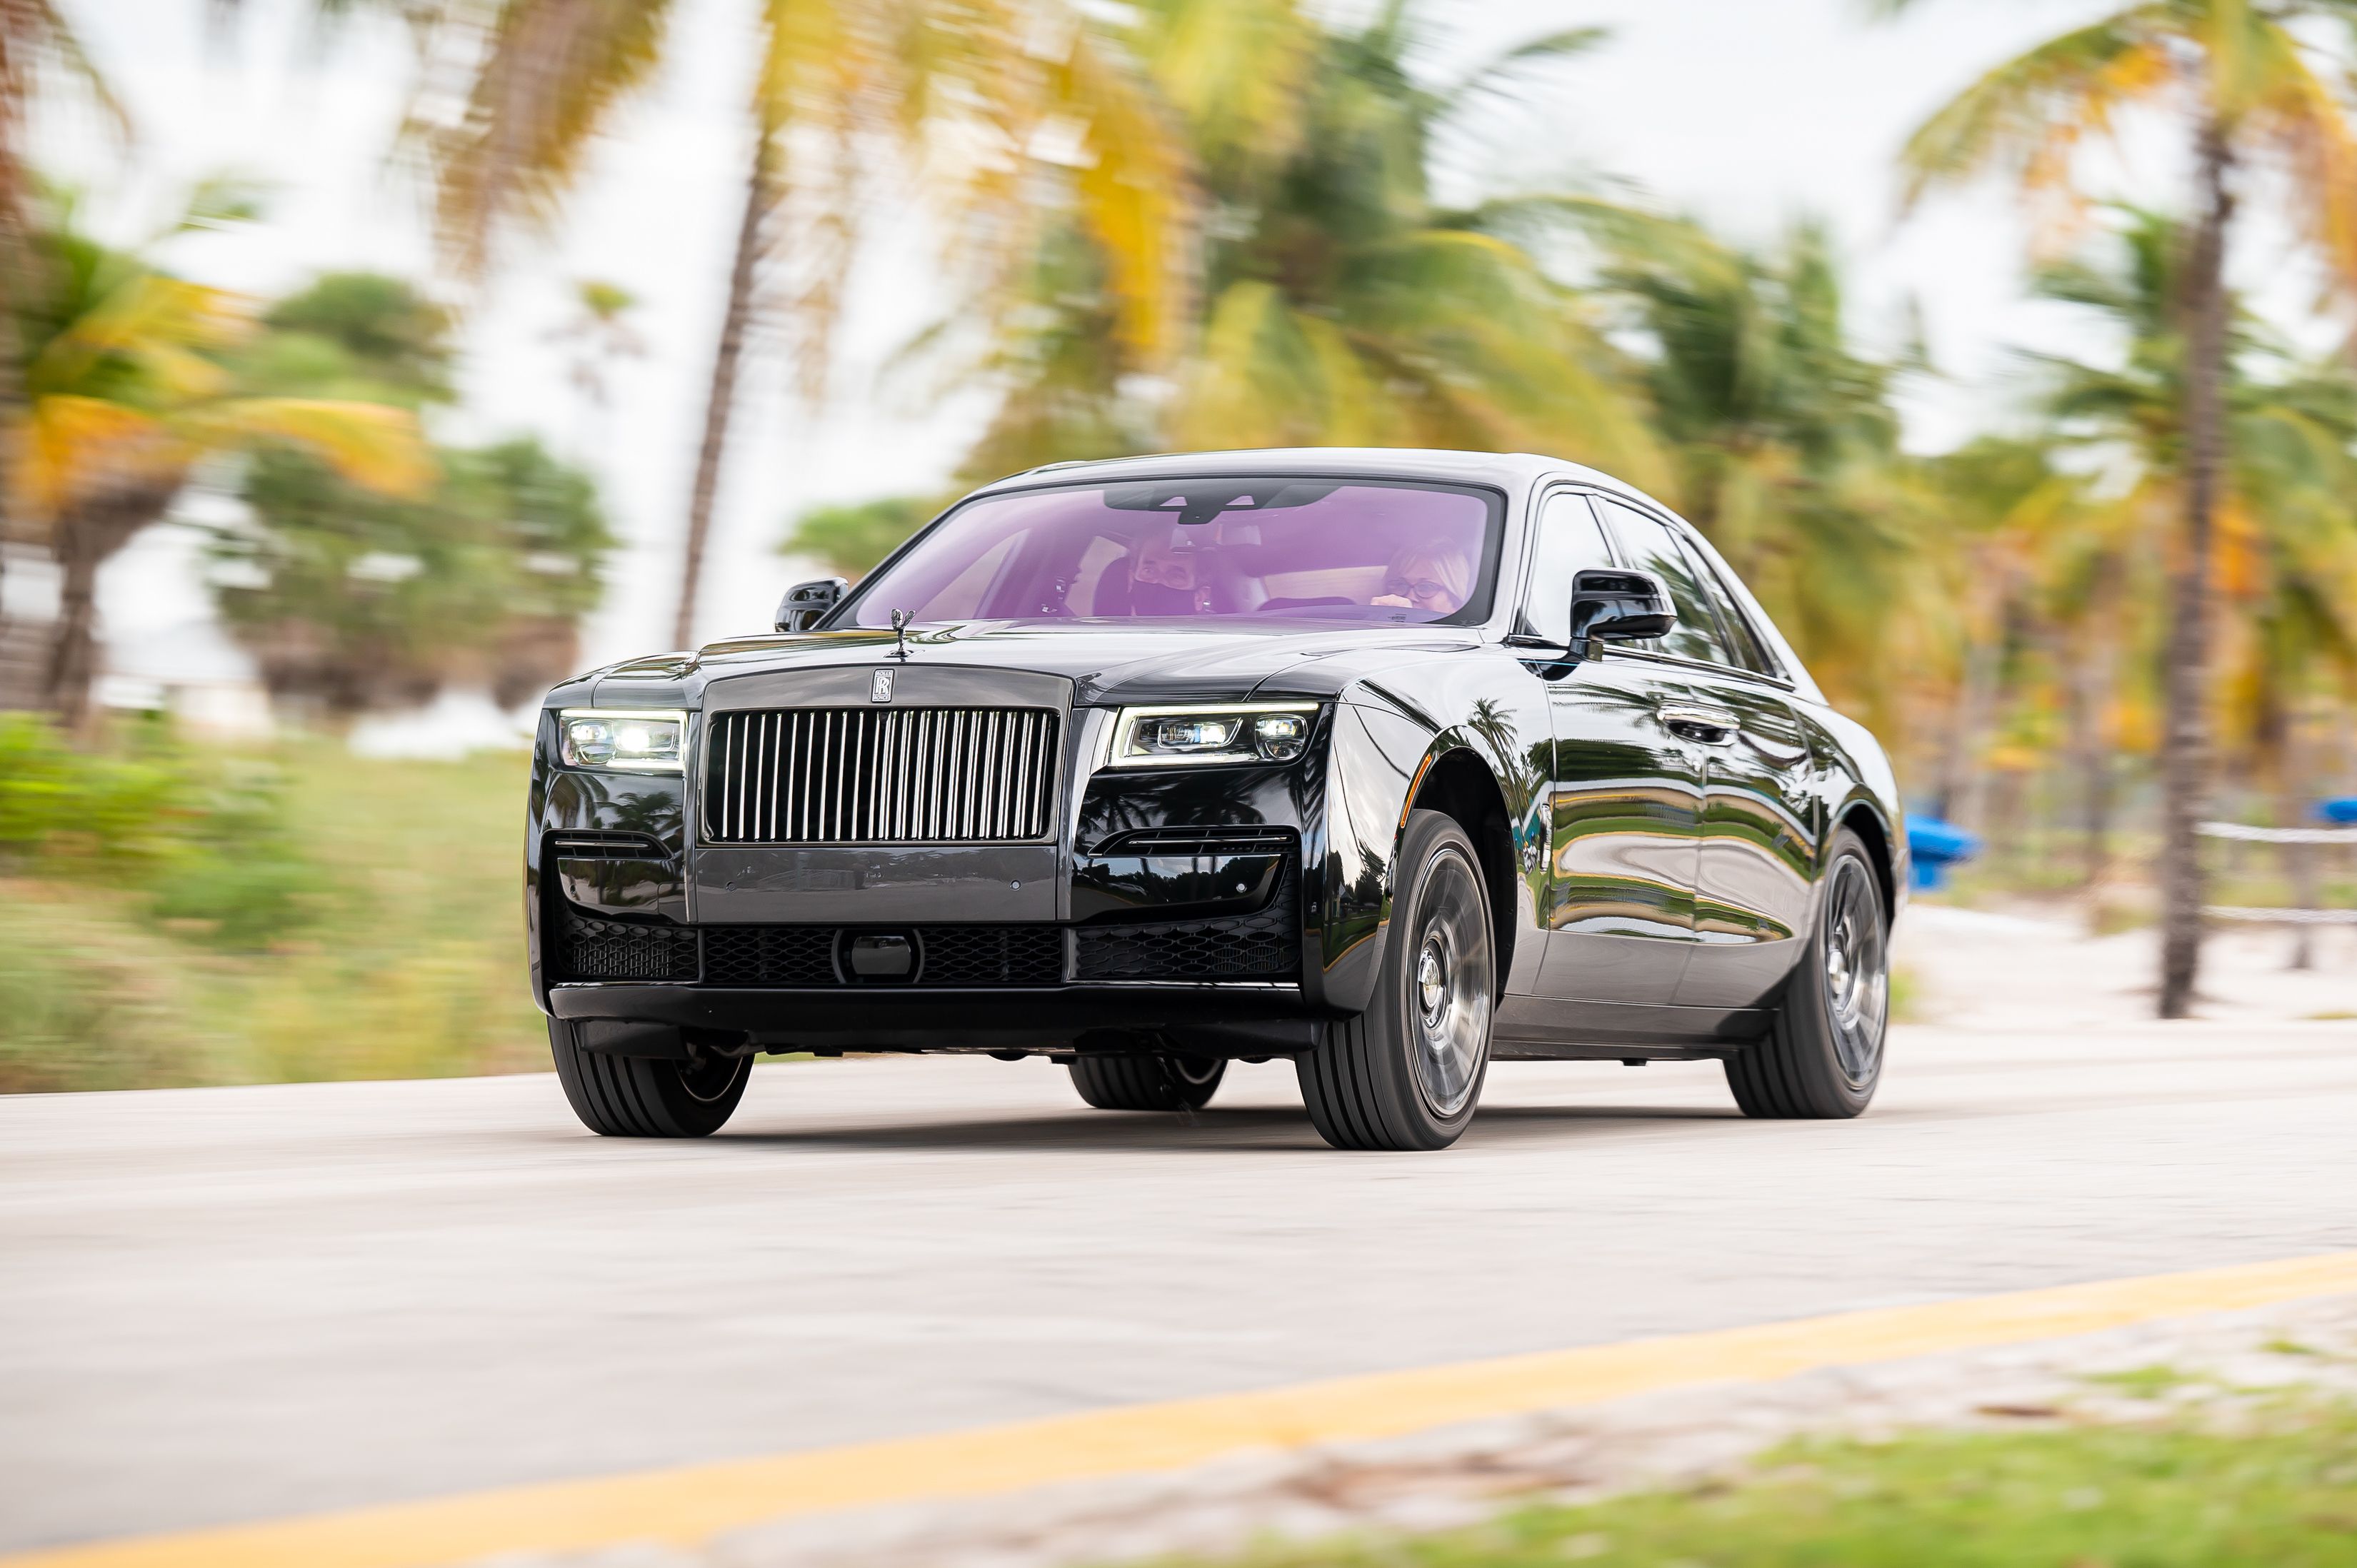 Rolls Royce lần đầu tiên ra mắt mẫu New Ghost tại châu Á   baoninhbinhorgvn